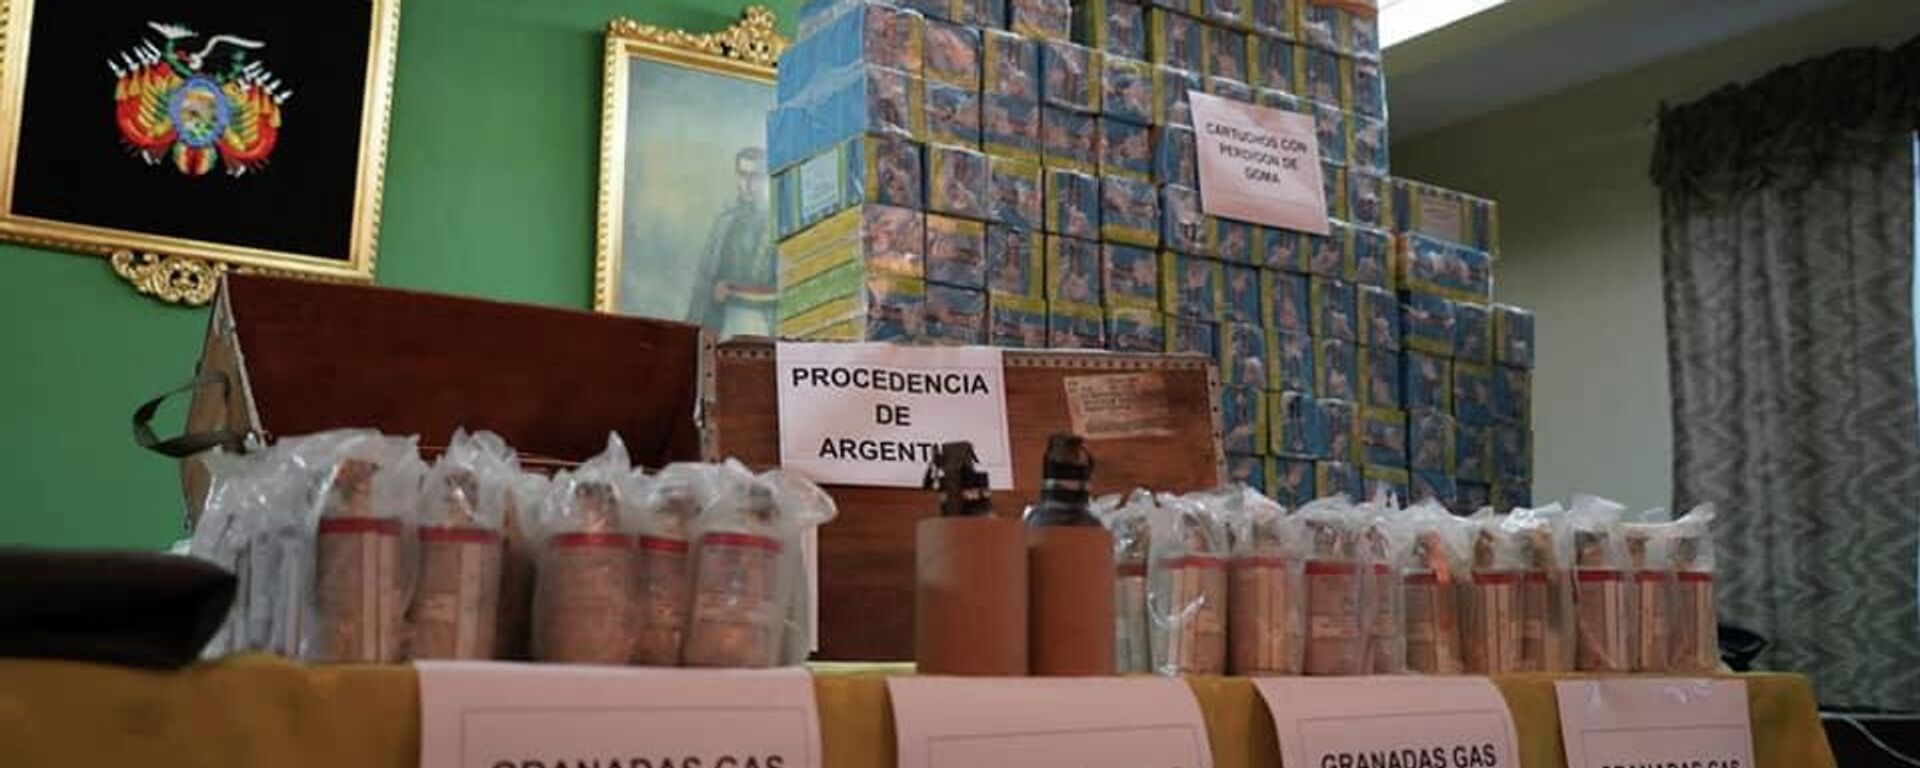 El Gobierno de Bolivia exhibió las municiones y confirmó que hubo tráfico ilícito desde Argentina - Sputnik Mundo, 1920, 19.07.2021